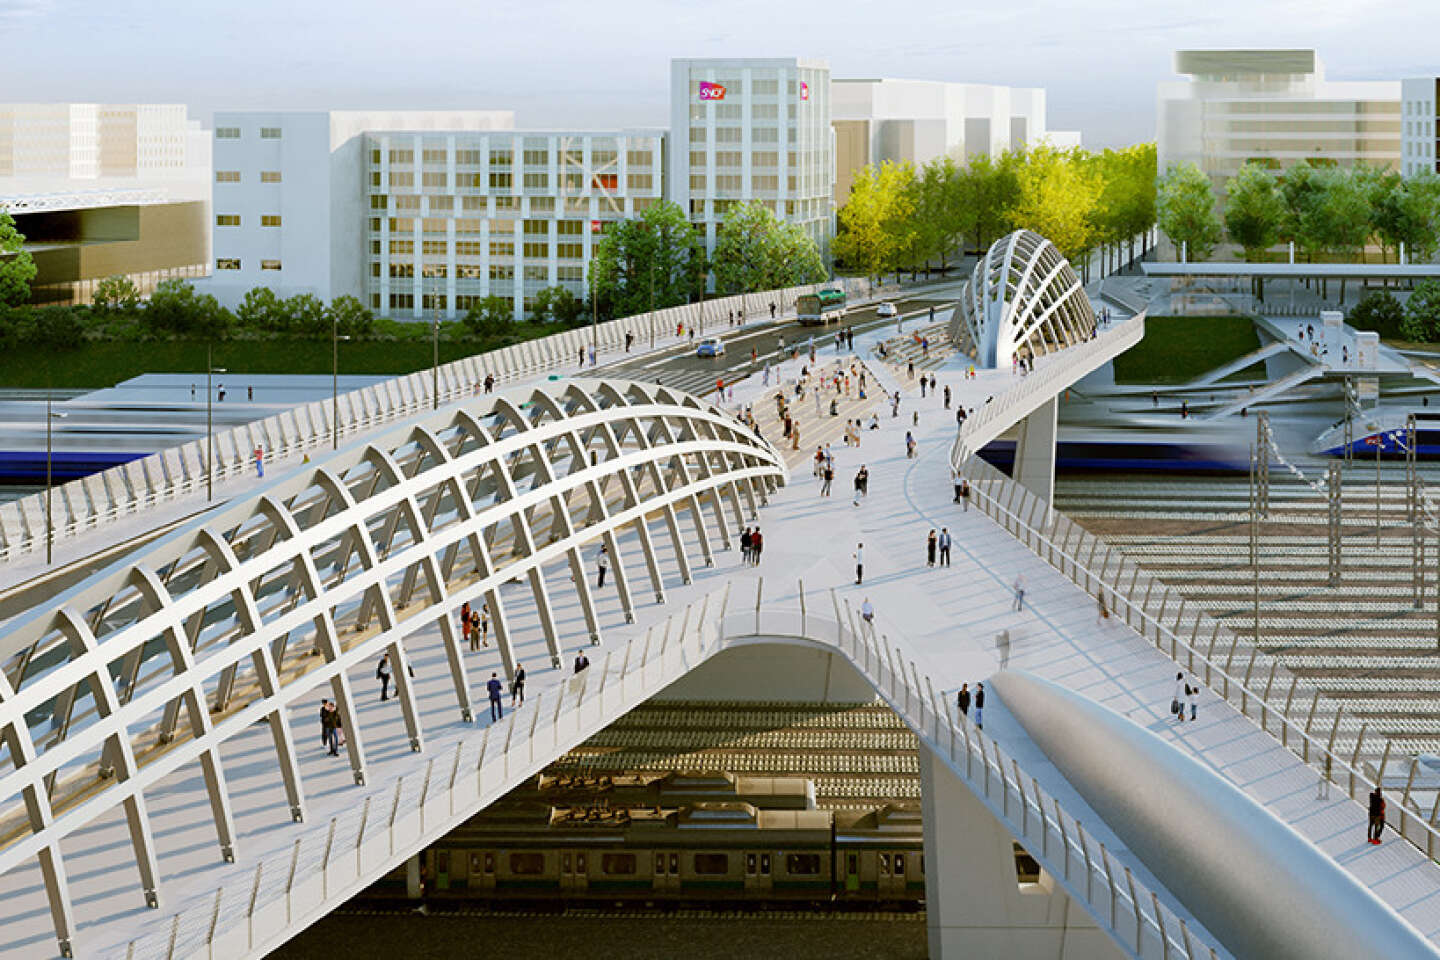 a new bridge to connect the Stade de France district and Plaine Saint-Denis